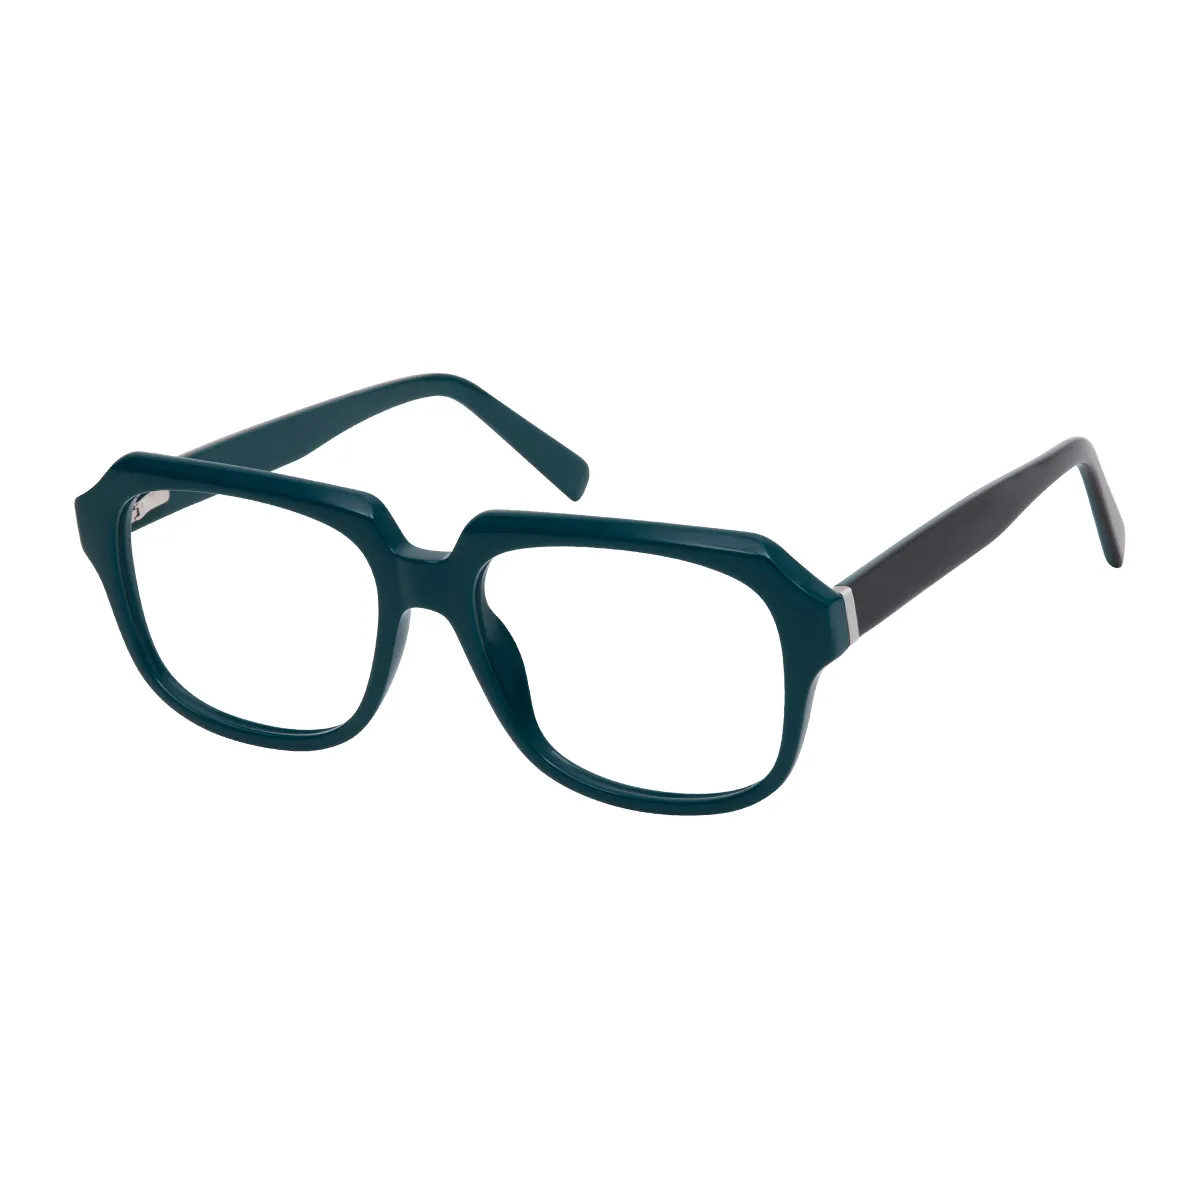 Cosima - Square Dark Green Glasses for Men & Women